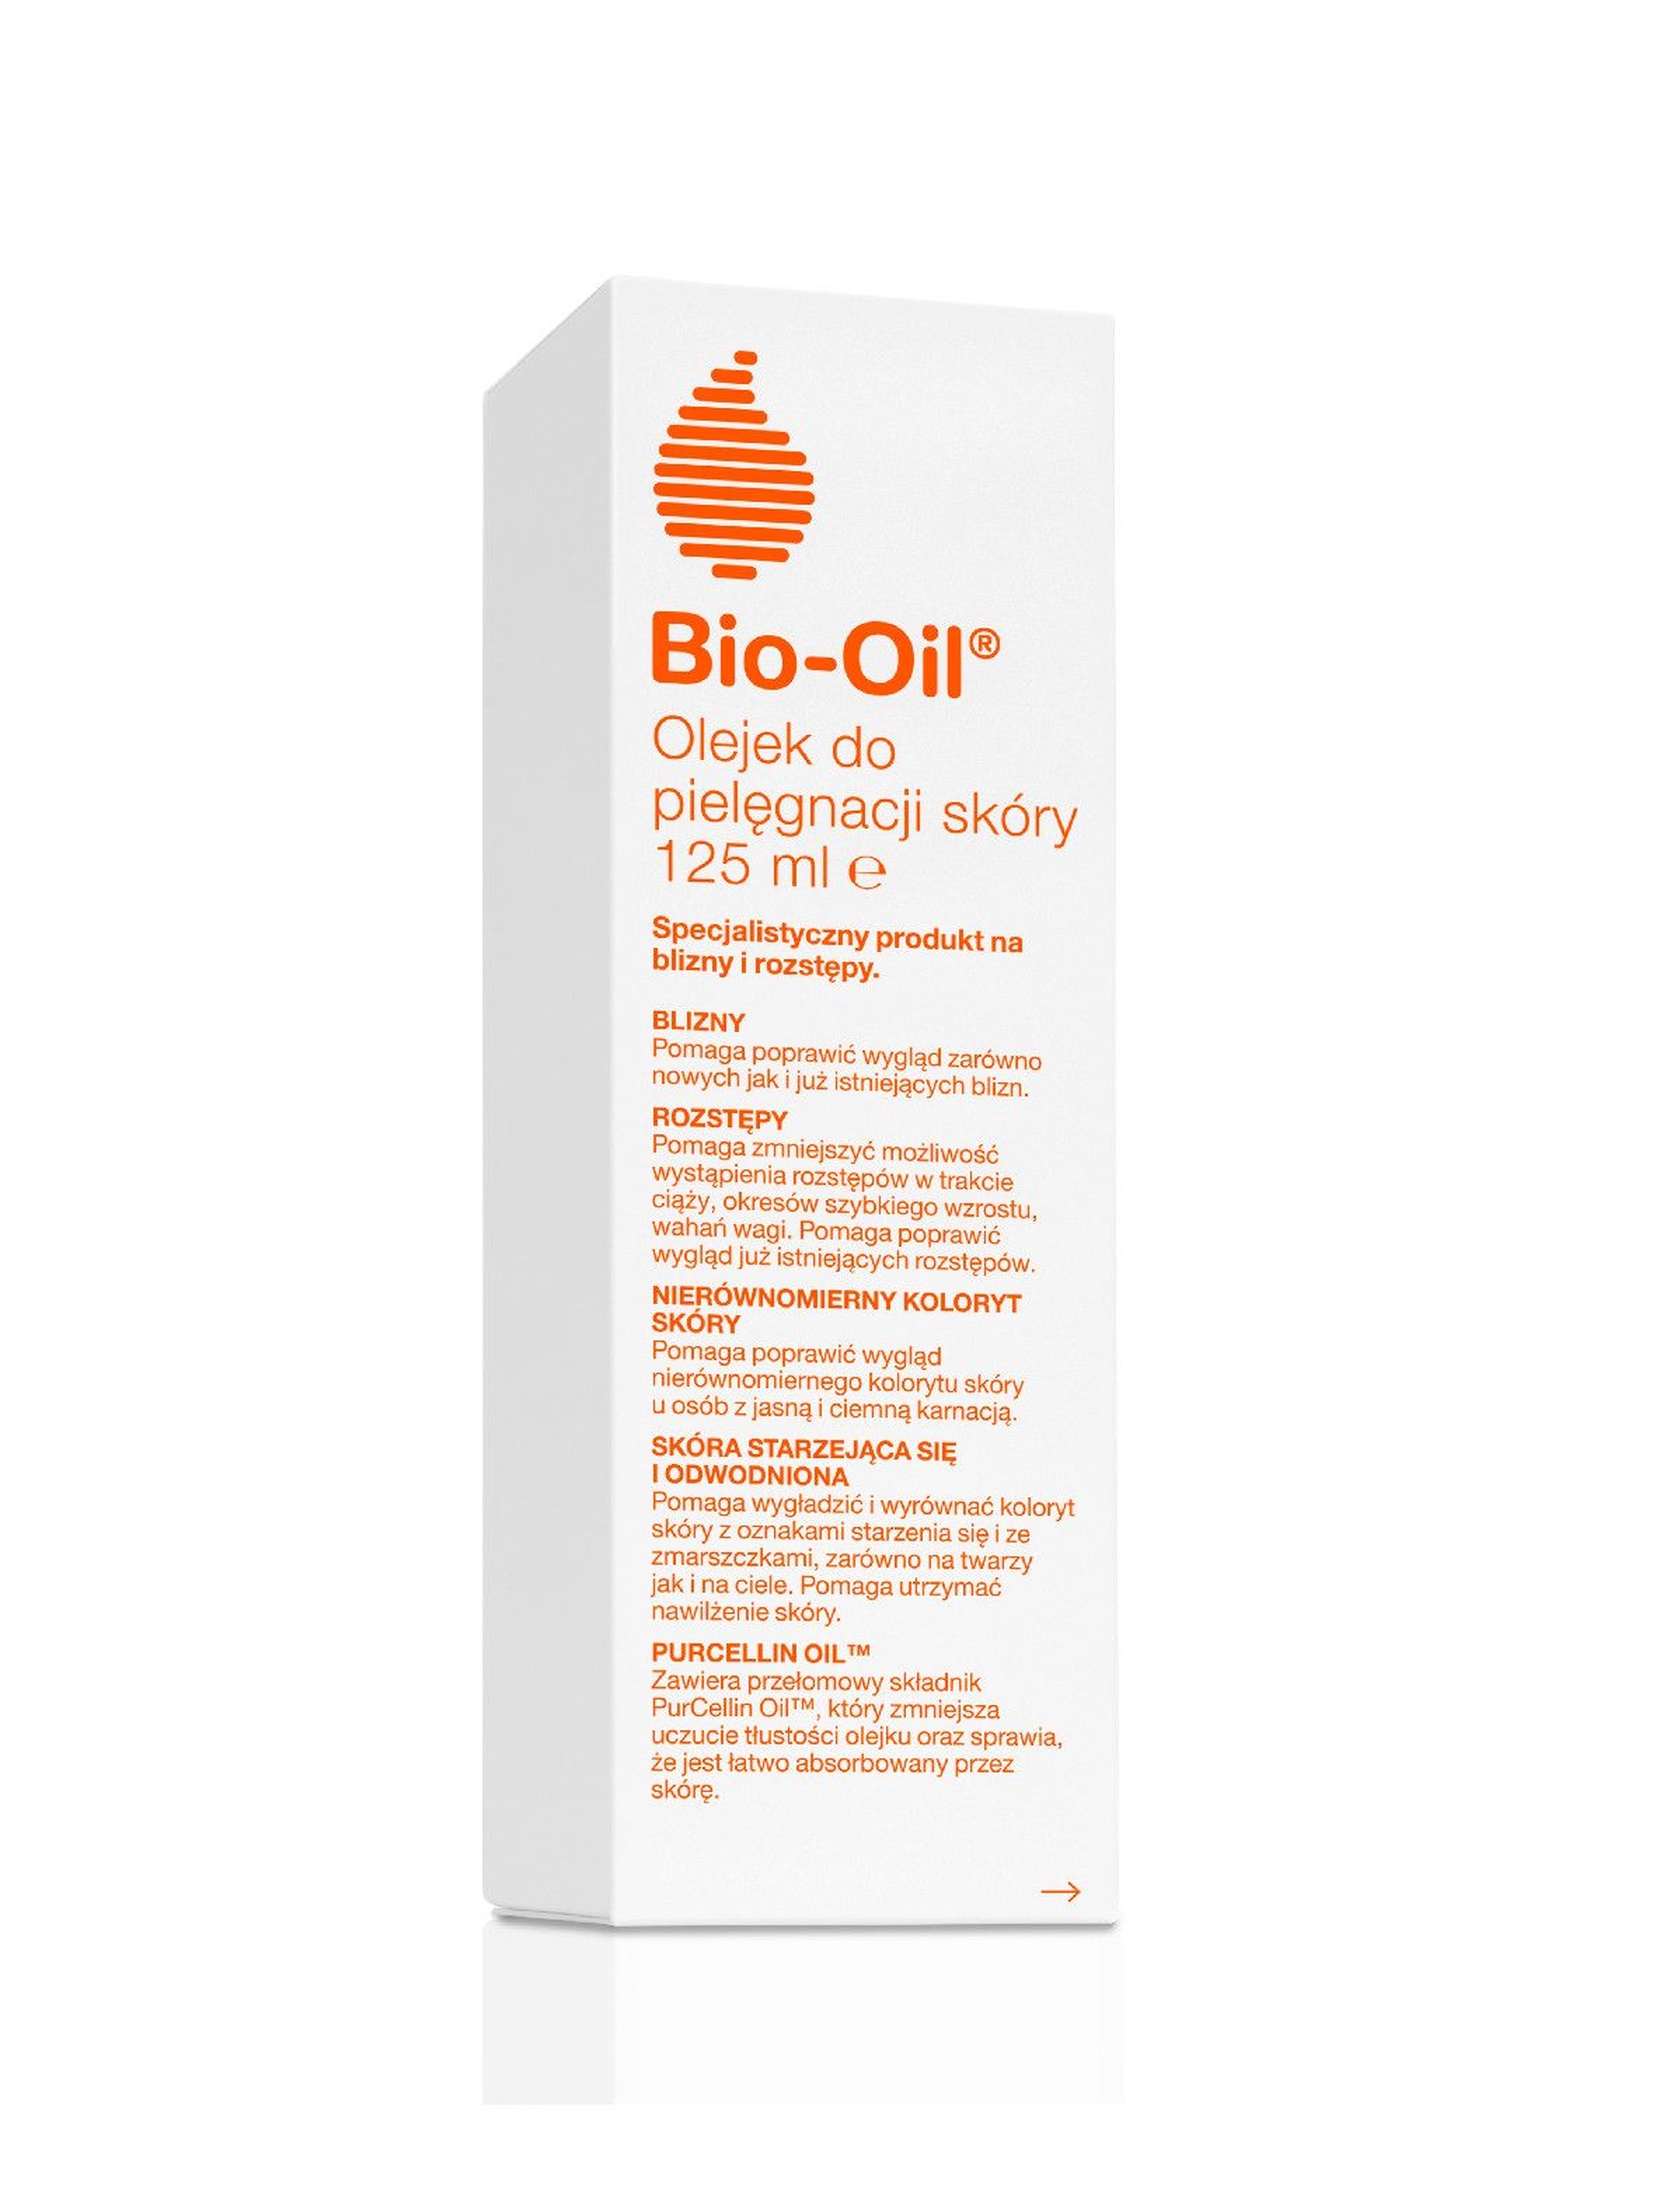 Bio-Oil olejek do pielęgnacji skóry na rozstępy i blizny 125 ml